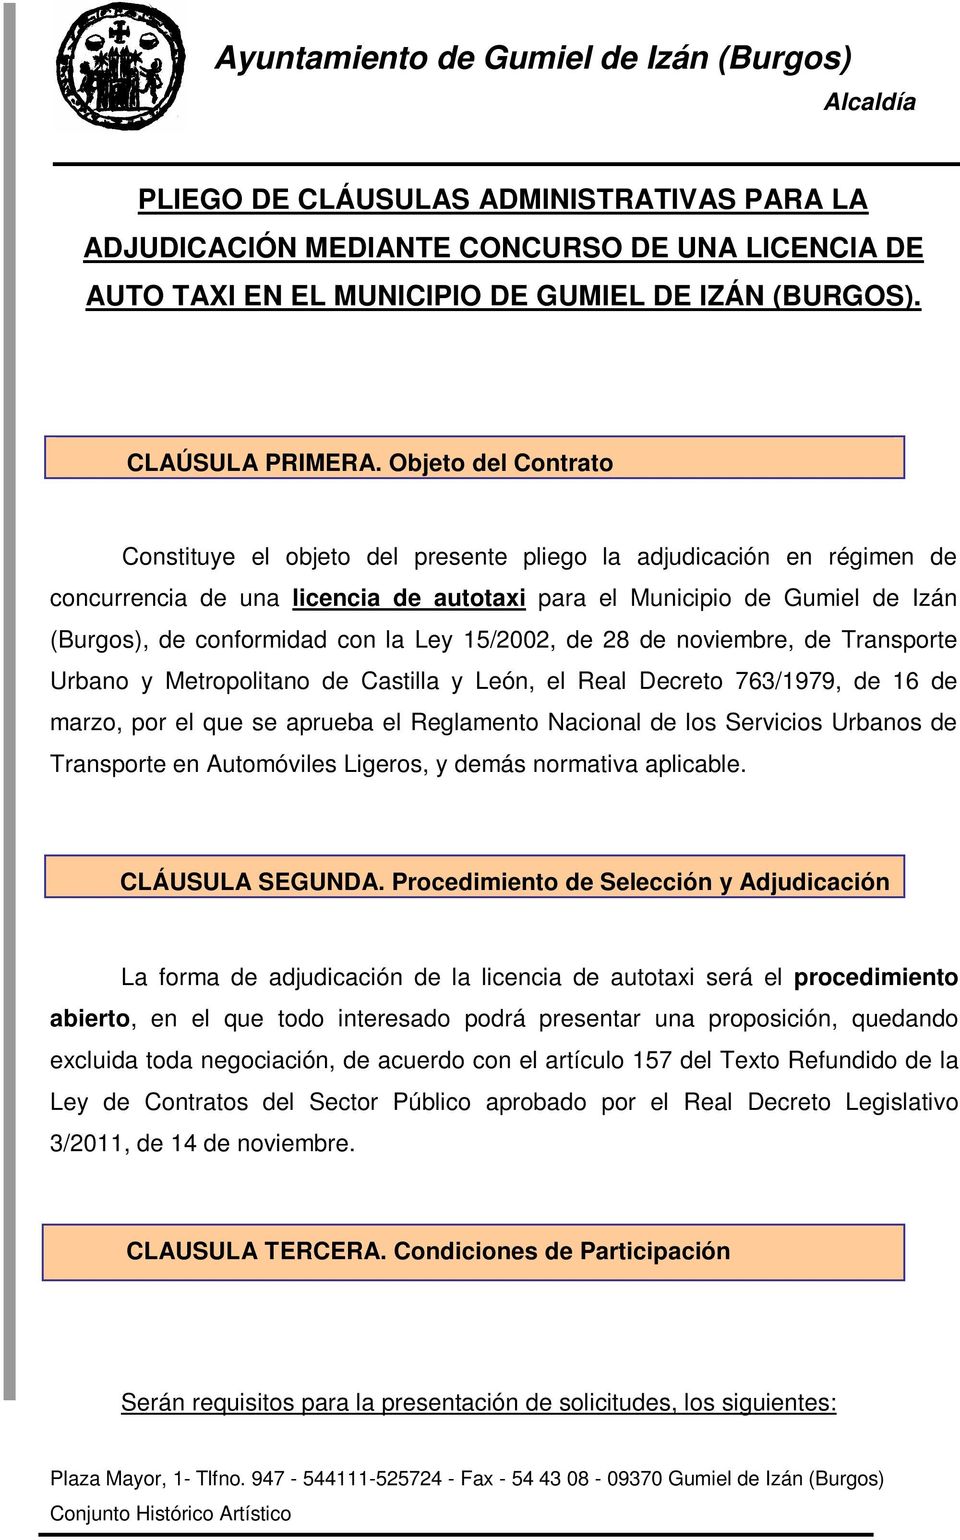 Ley 15/2002, de 28 de noviembre, de Transporte Urbano y Metropolitano de Castilla y León, el Real Decreto 763/1979, de 16 de marzo, por el que se aprueba el Reglamento Nacional de los Servicios